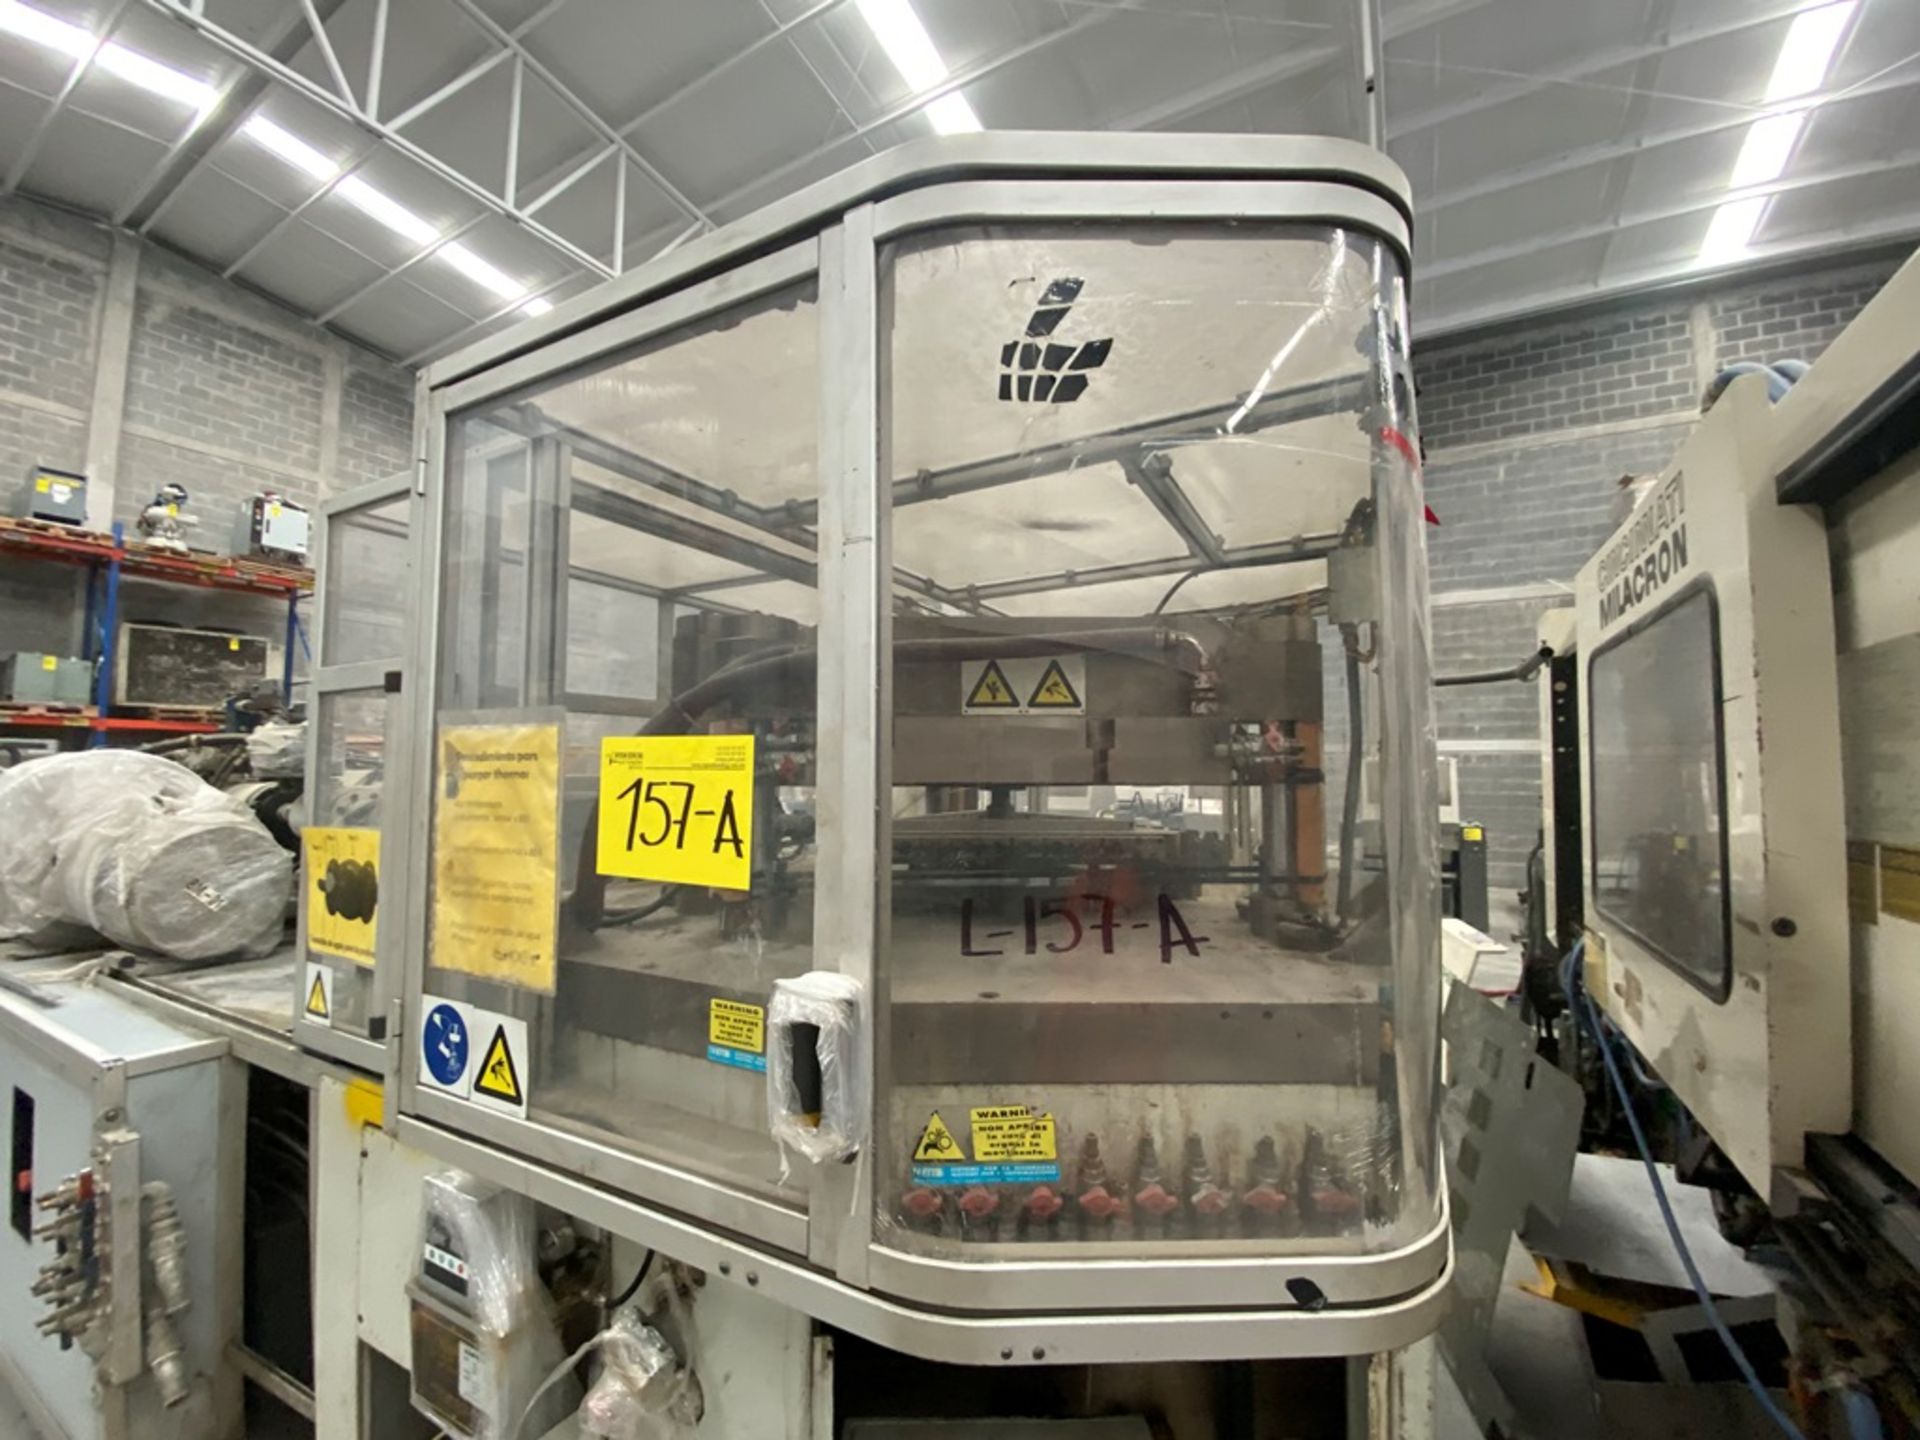 Uniloy Milacron Blow Molding Machine, Year 2007, 460V, 3PH, 60Hz - Image 24 of 51